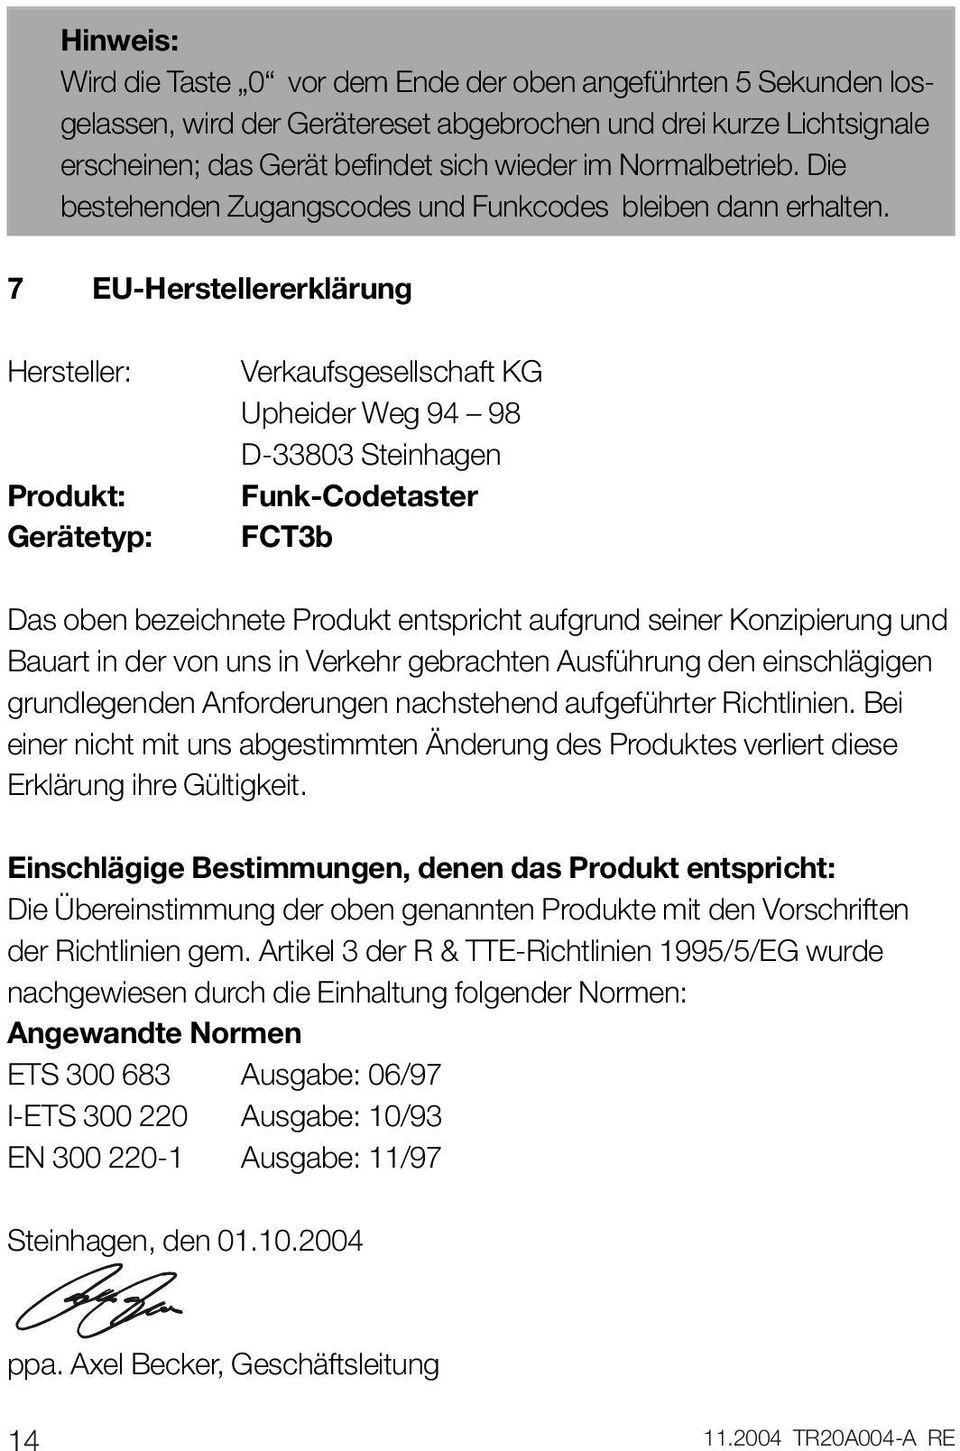 7 EU-Herstellererklärung Hersteller: Produkt: Gerätetyp: Verkaufsgesellschaft KG Upheider Weg 94 98 D-33803 Steinhagen Funk-Codetaster FCT3b Das oben bezeichnete Produkt entspricht aufgrund seiner